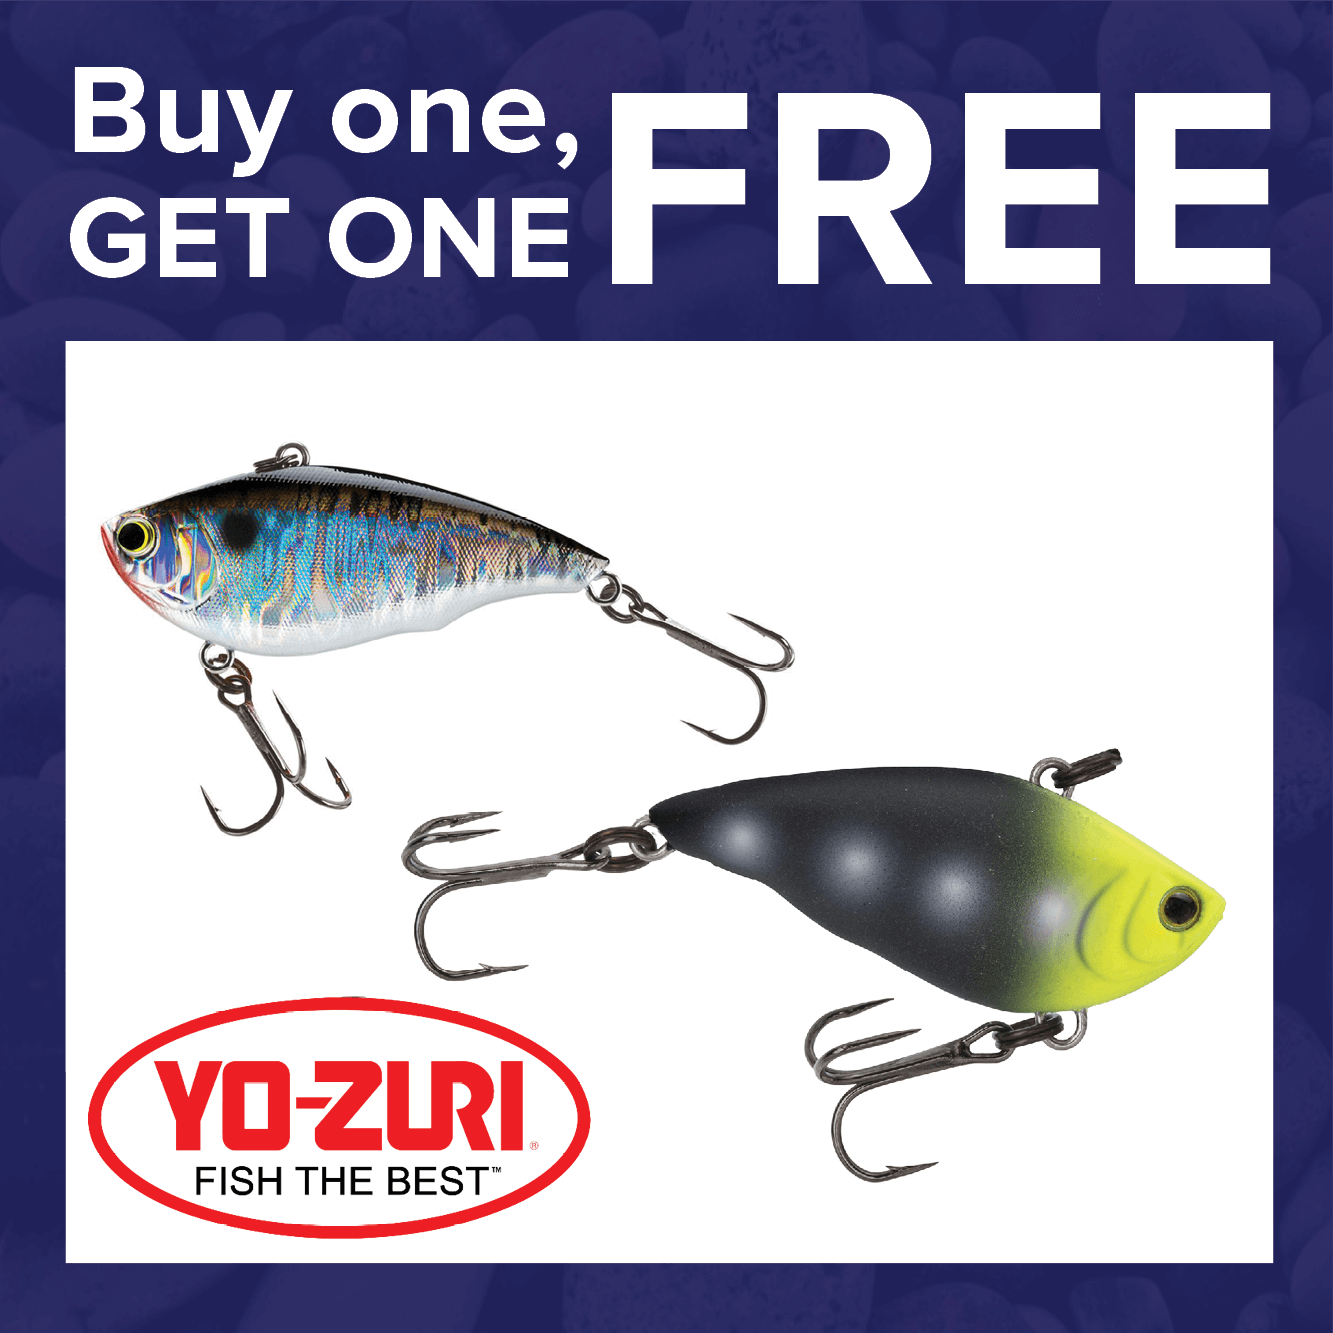 Buy 1, Get 1 FREE on Yo-Zuri Lures & Baits!